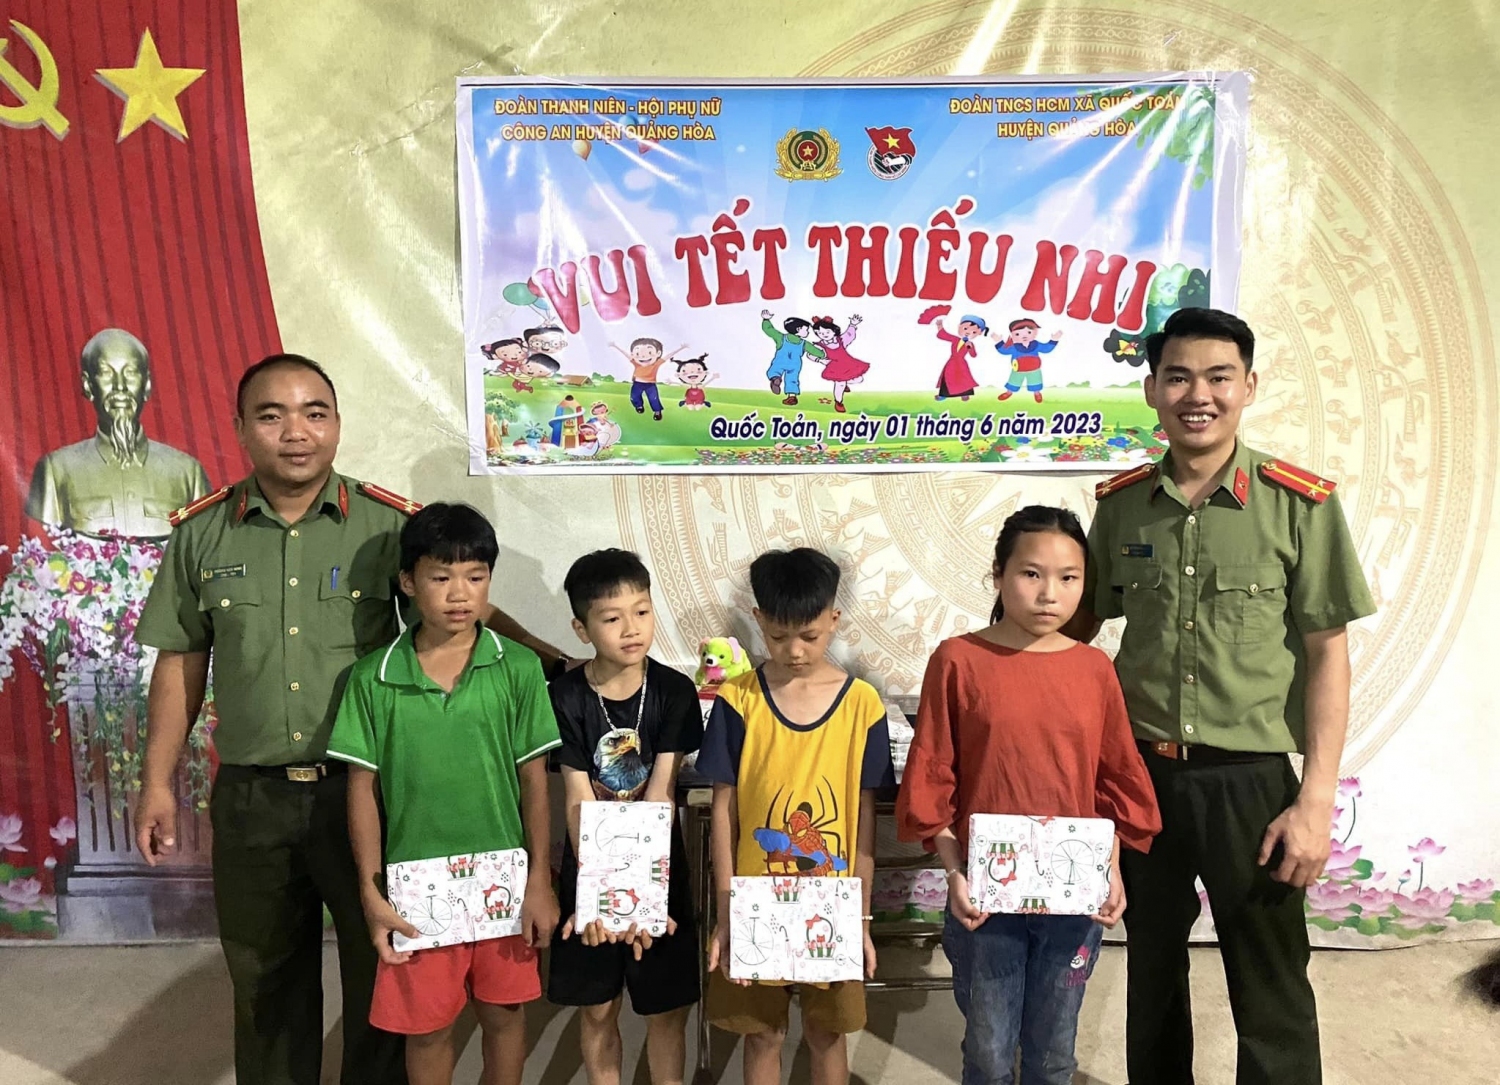 Hội phụ nữ - Đội An ninh, Công an huyện Quảng Hòa thăm tặng quà cho các em học sinh tại xã Quốc Toản